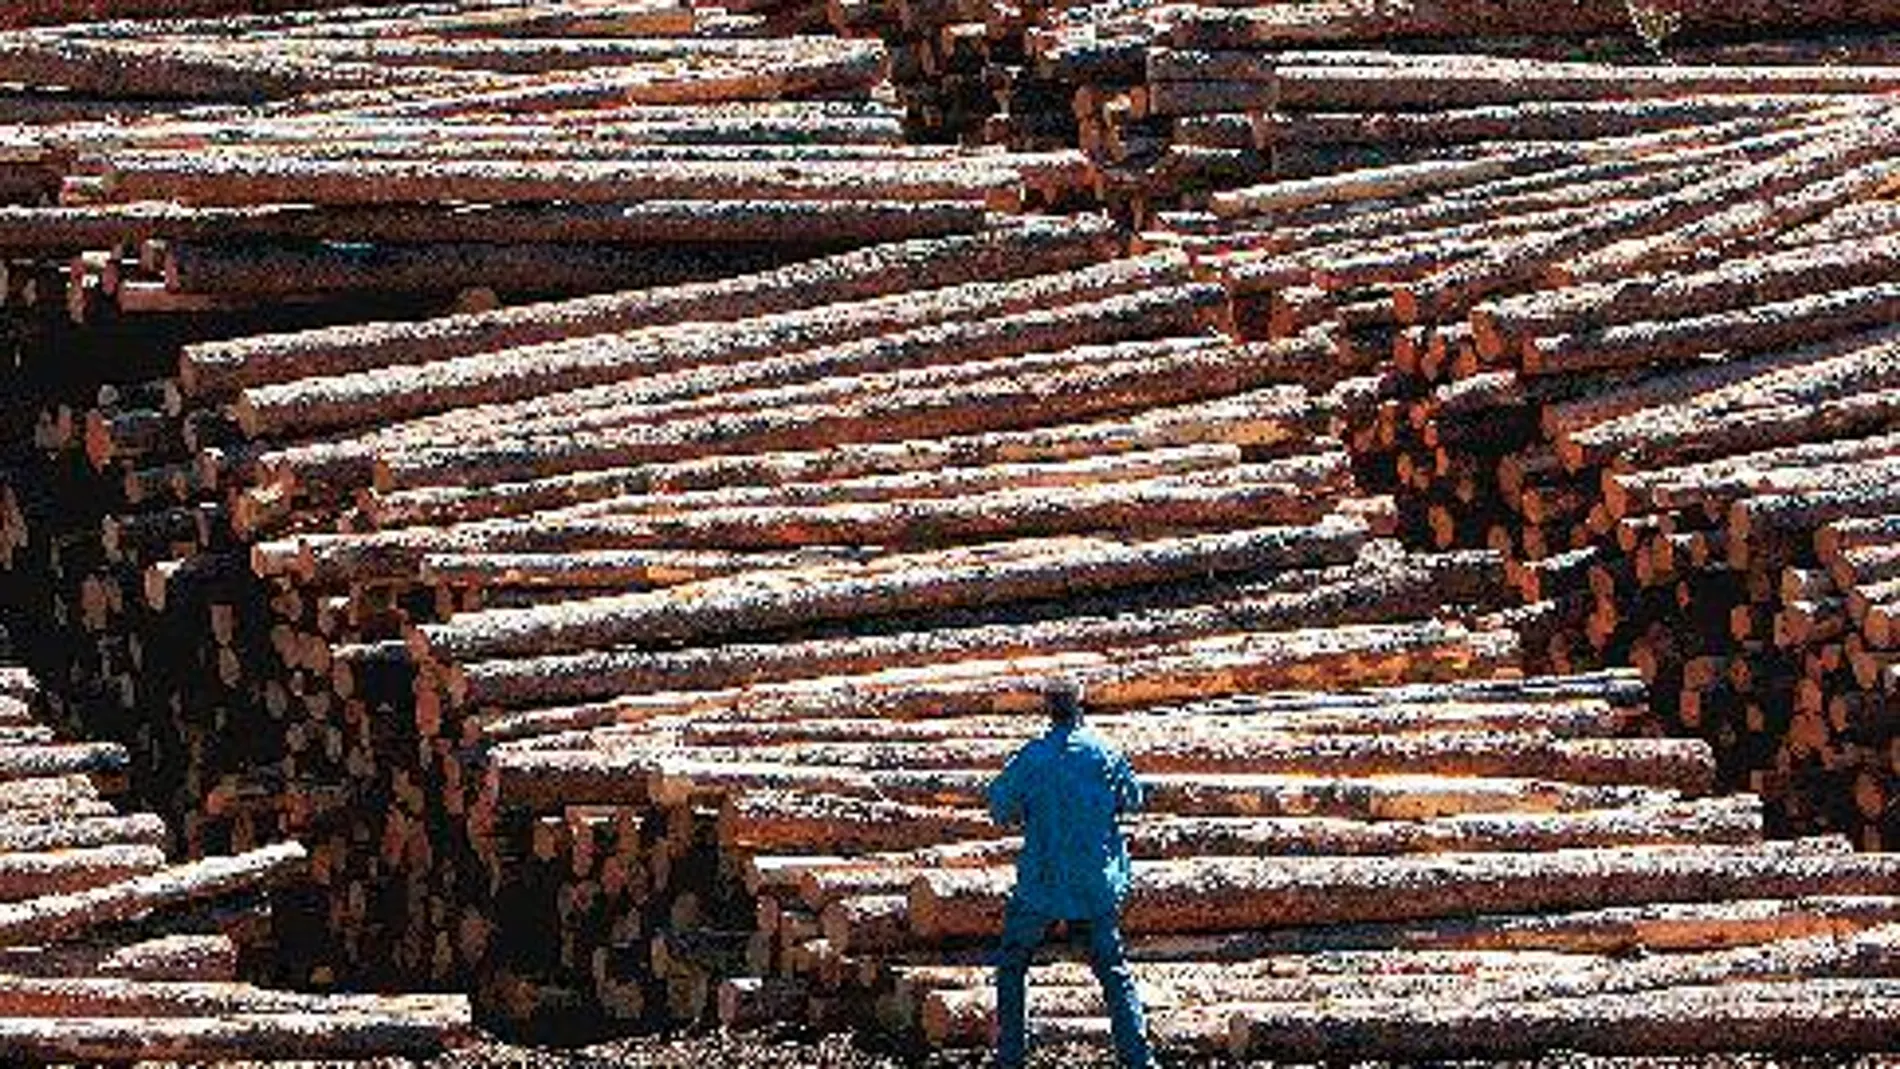 La superficie boscosa en nuestro país ha crecido más de un 33% en los últimos 15 años, aunque el consumo de madera ha caído una enormidad